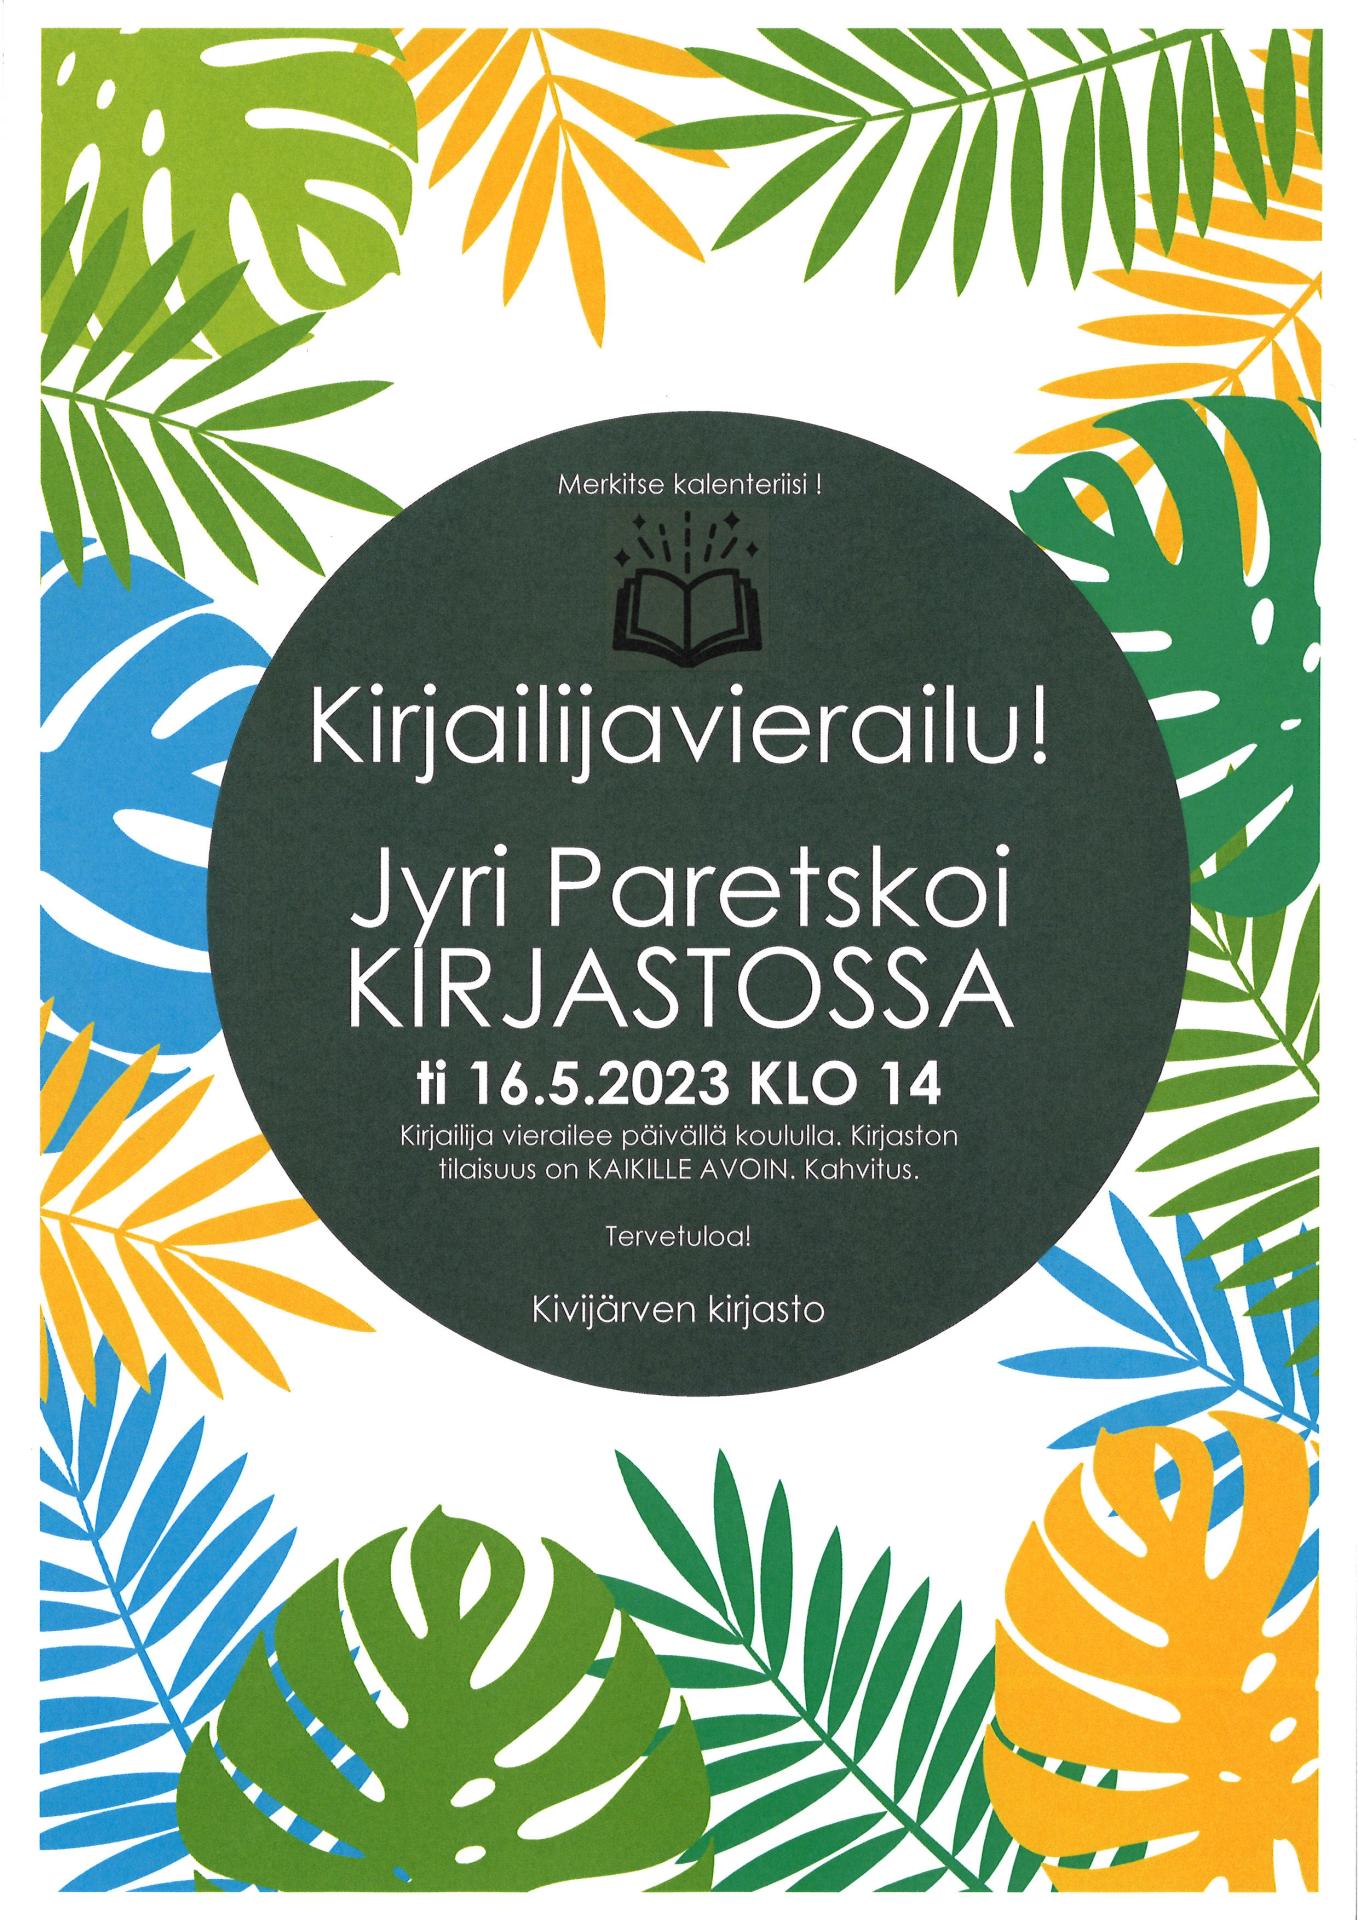 Kirjailija Jyri Paretskoi vierailee kirjastossa tiistaina 16. toukokuuta klo 14